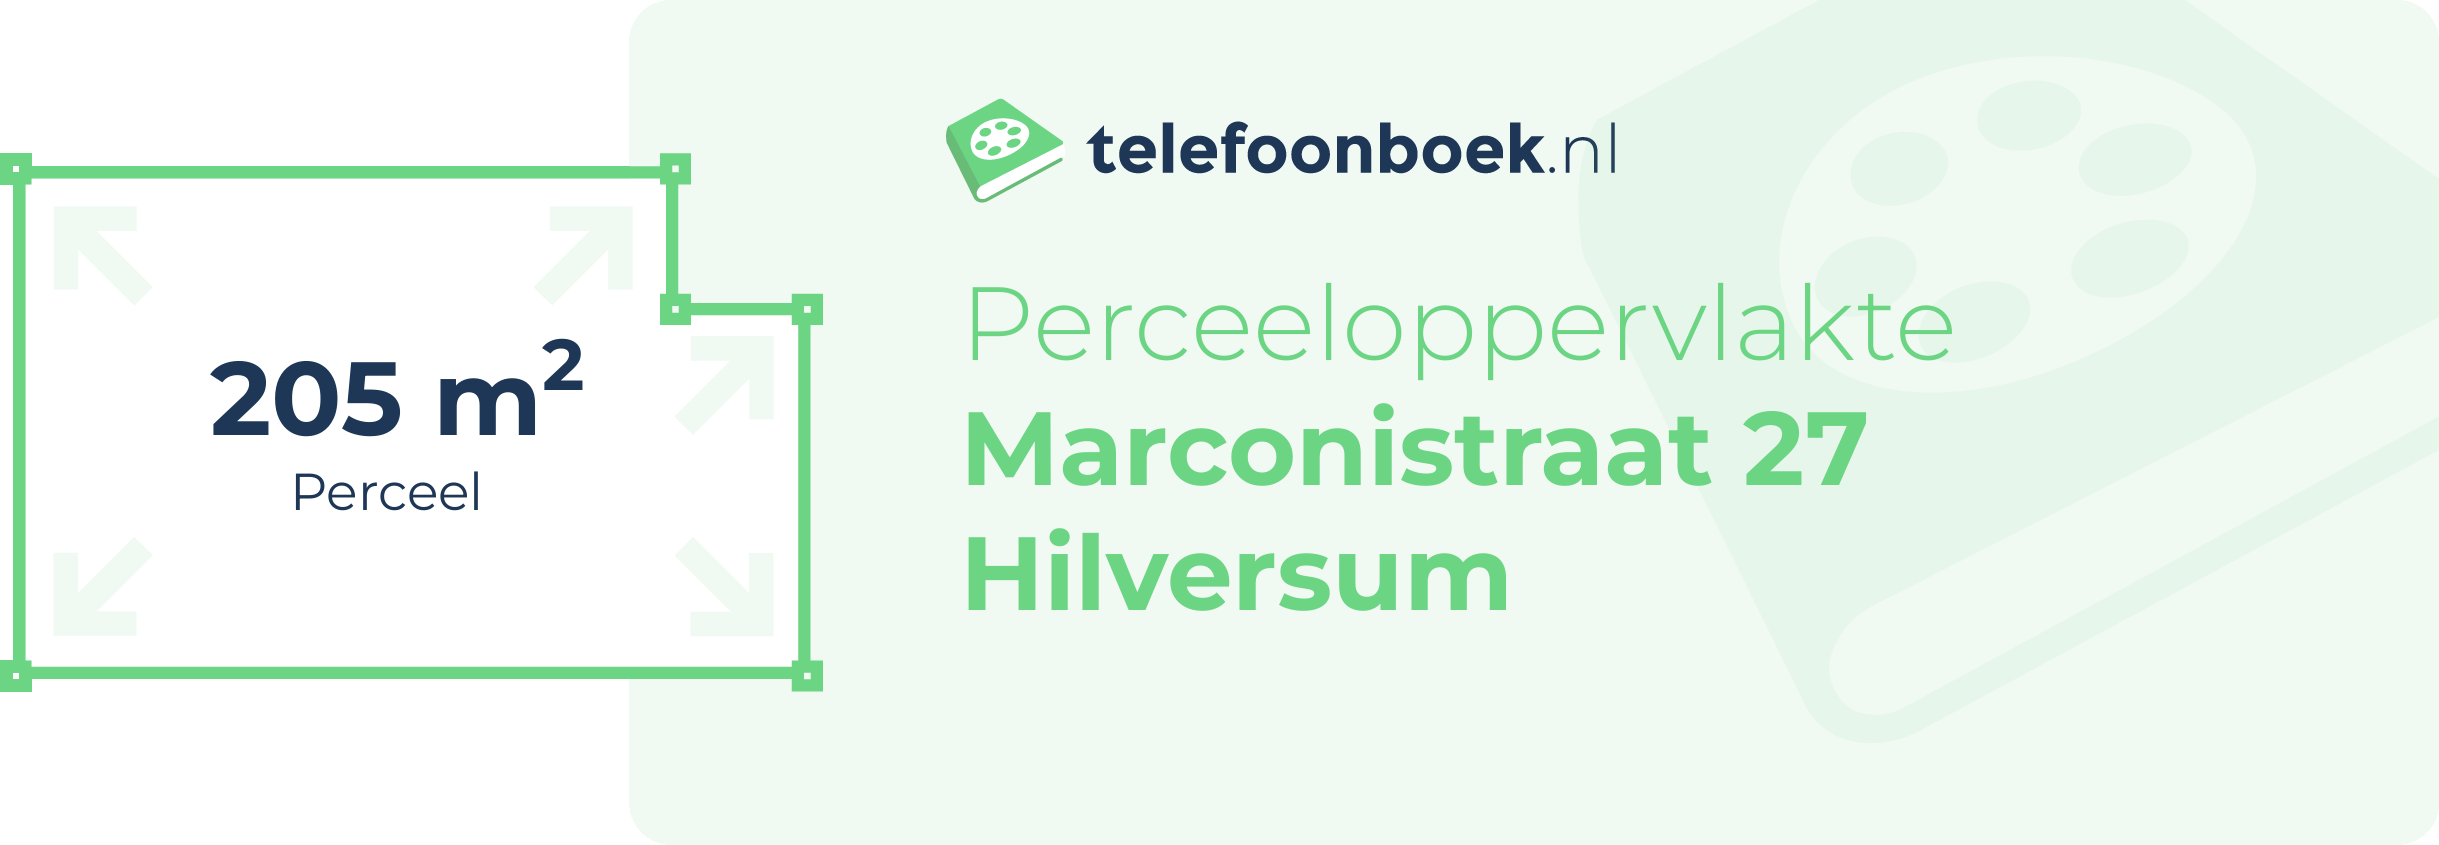 Perceeloppervlakte Marconistraat 27 Hilversum